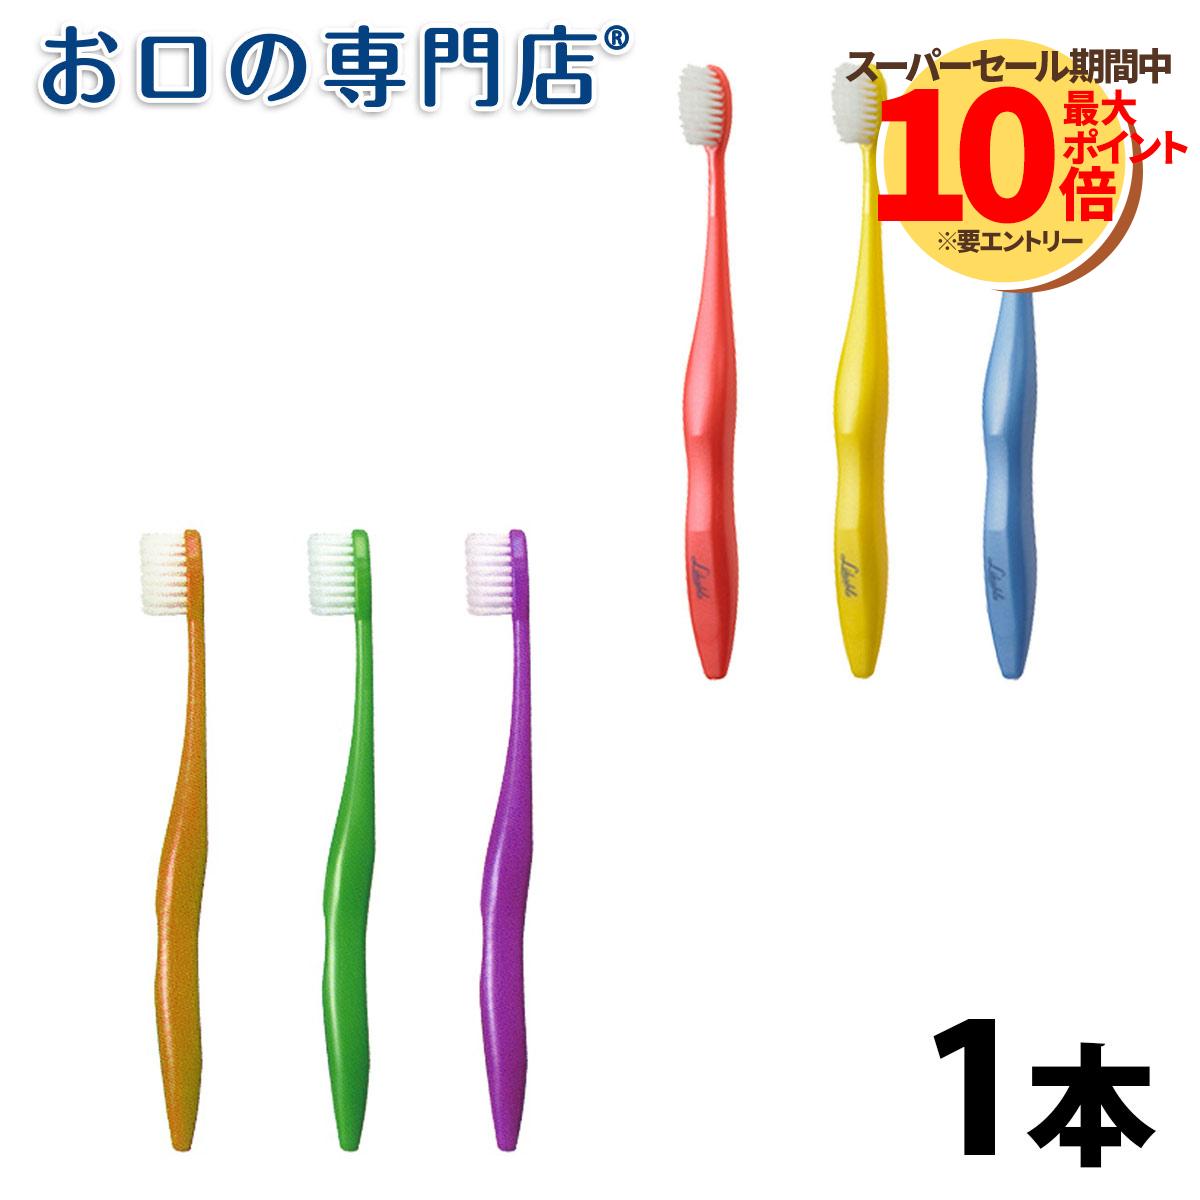 日本製 歯ブラシ ライカブル 1本【ライカブル】【メール便OK】